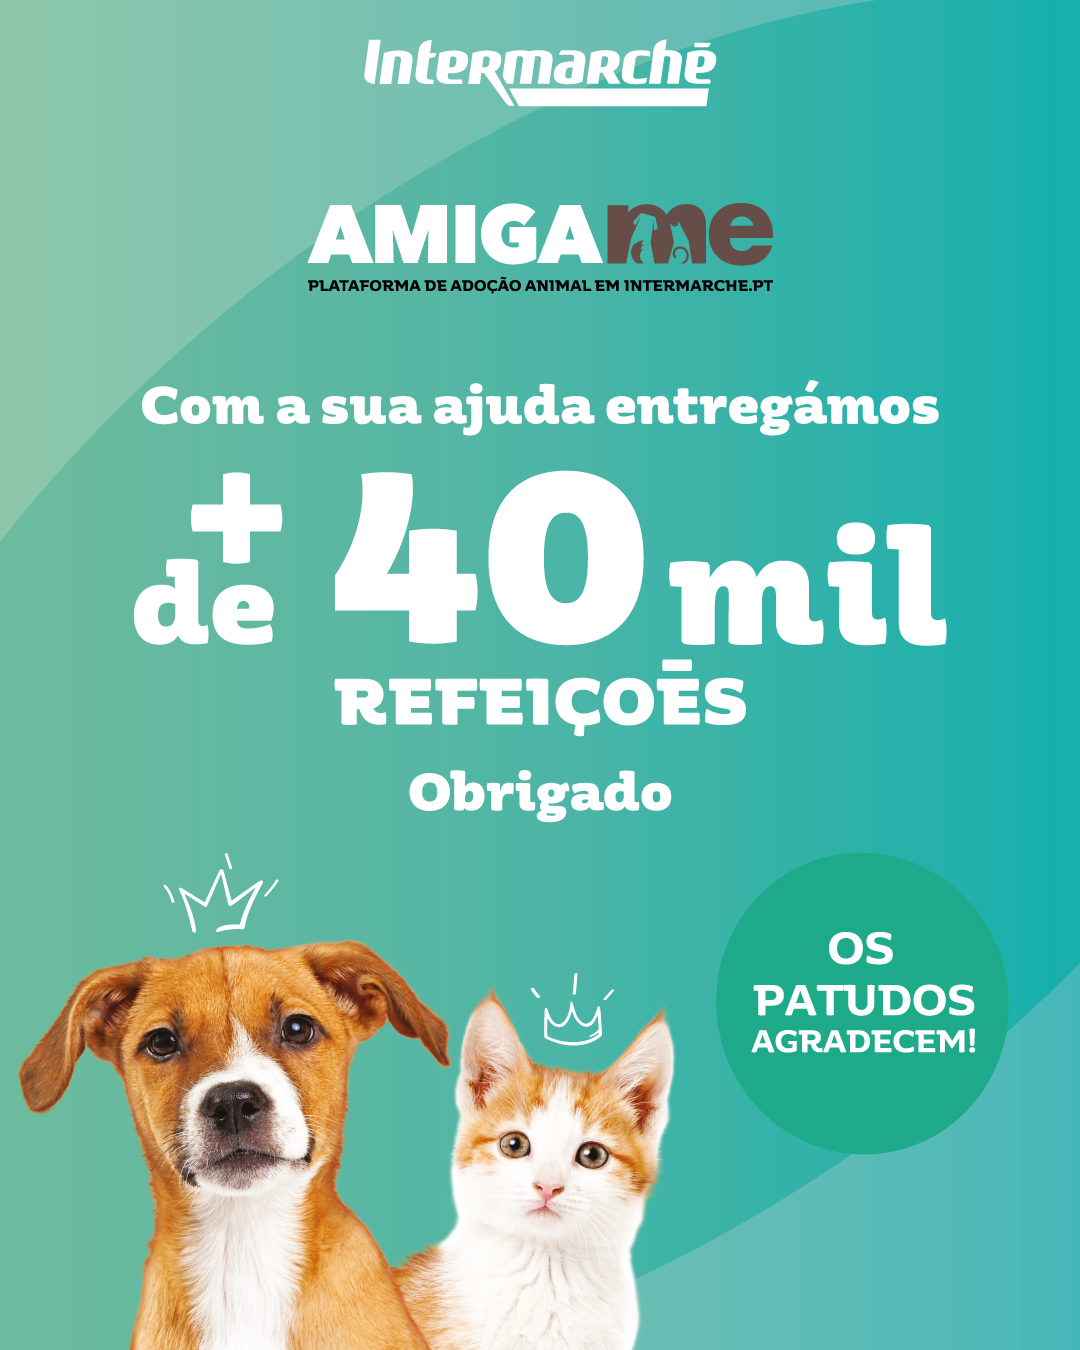 Campanha "Amiga-me" do Intermarché angaria mais de 40 mil refeições para animais abandonados